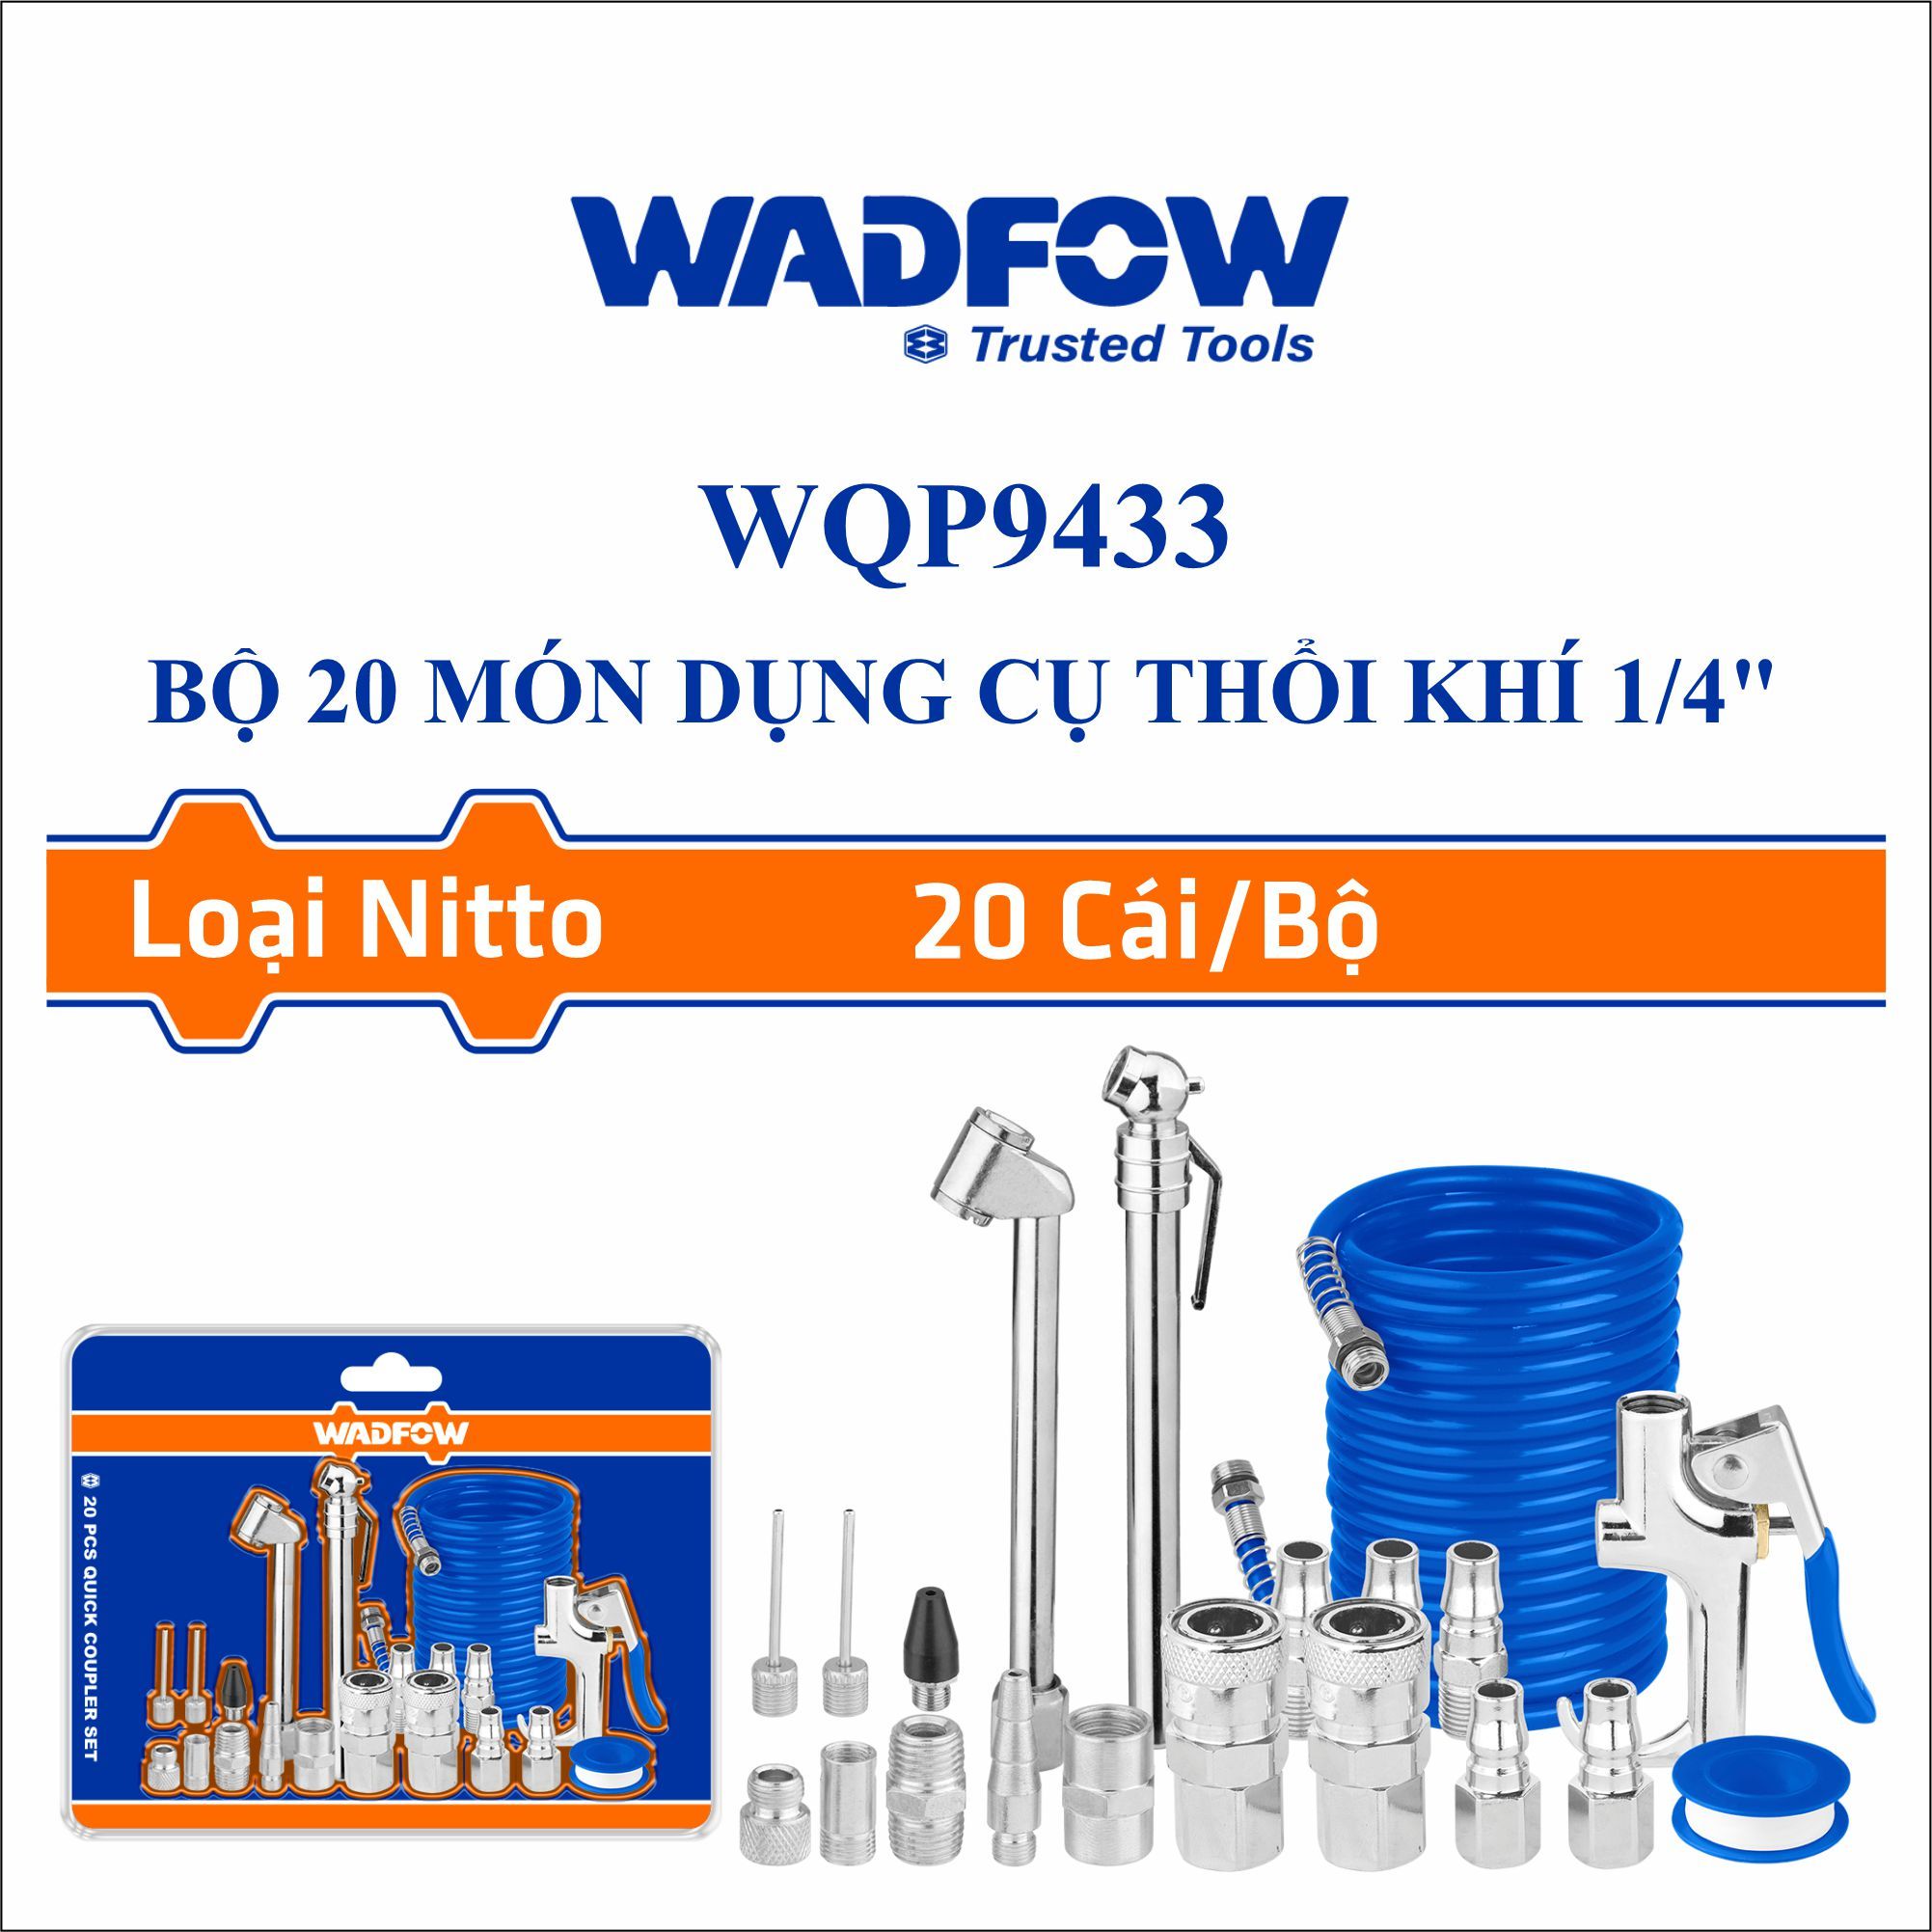  Bộ 20 món dụng cụ thổi khí 1/4 Inch WADFOW WQP9433 